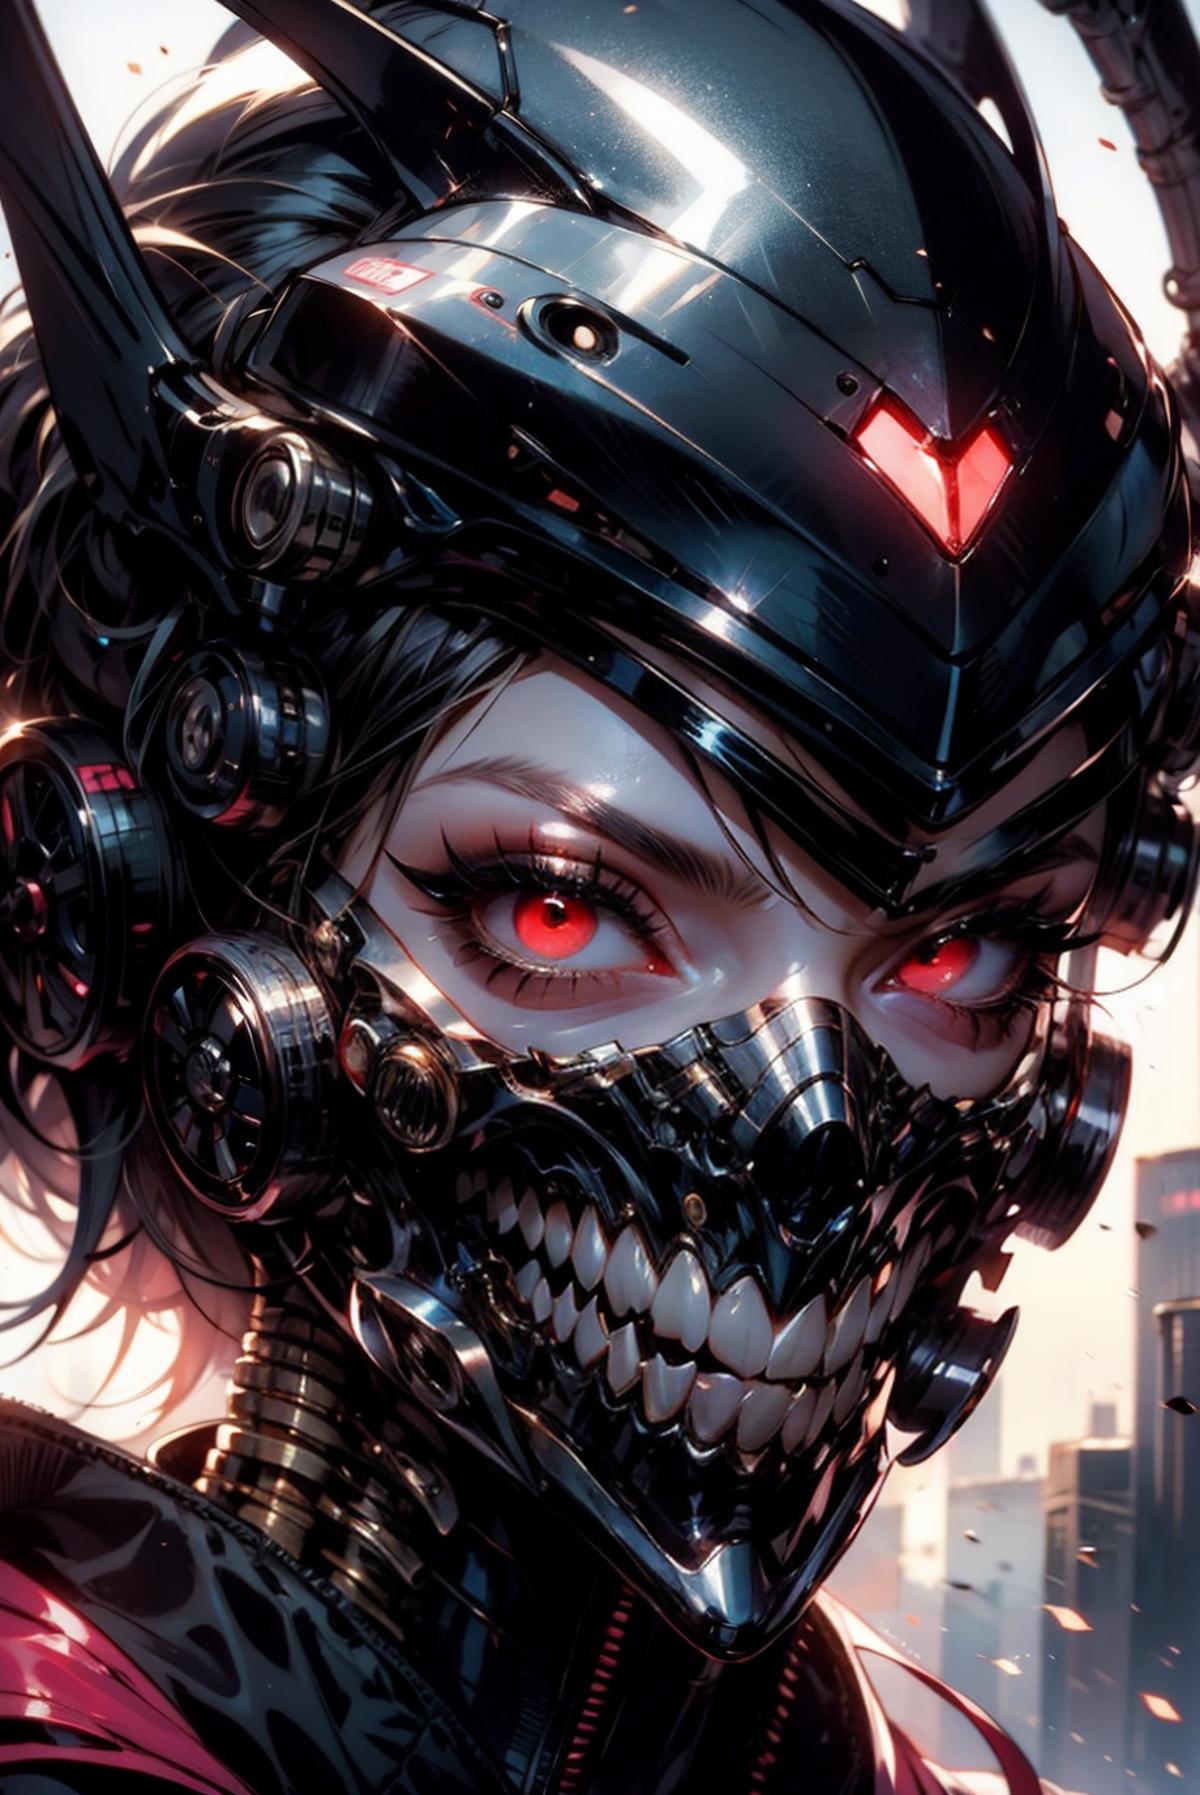 Futuristic Cyborg Woman with Glowing Eyes and Teeth - Cyberpunk Art